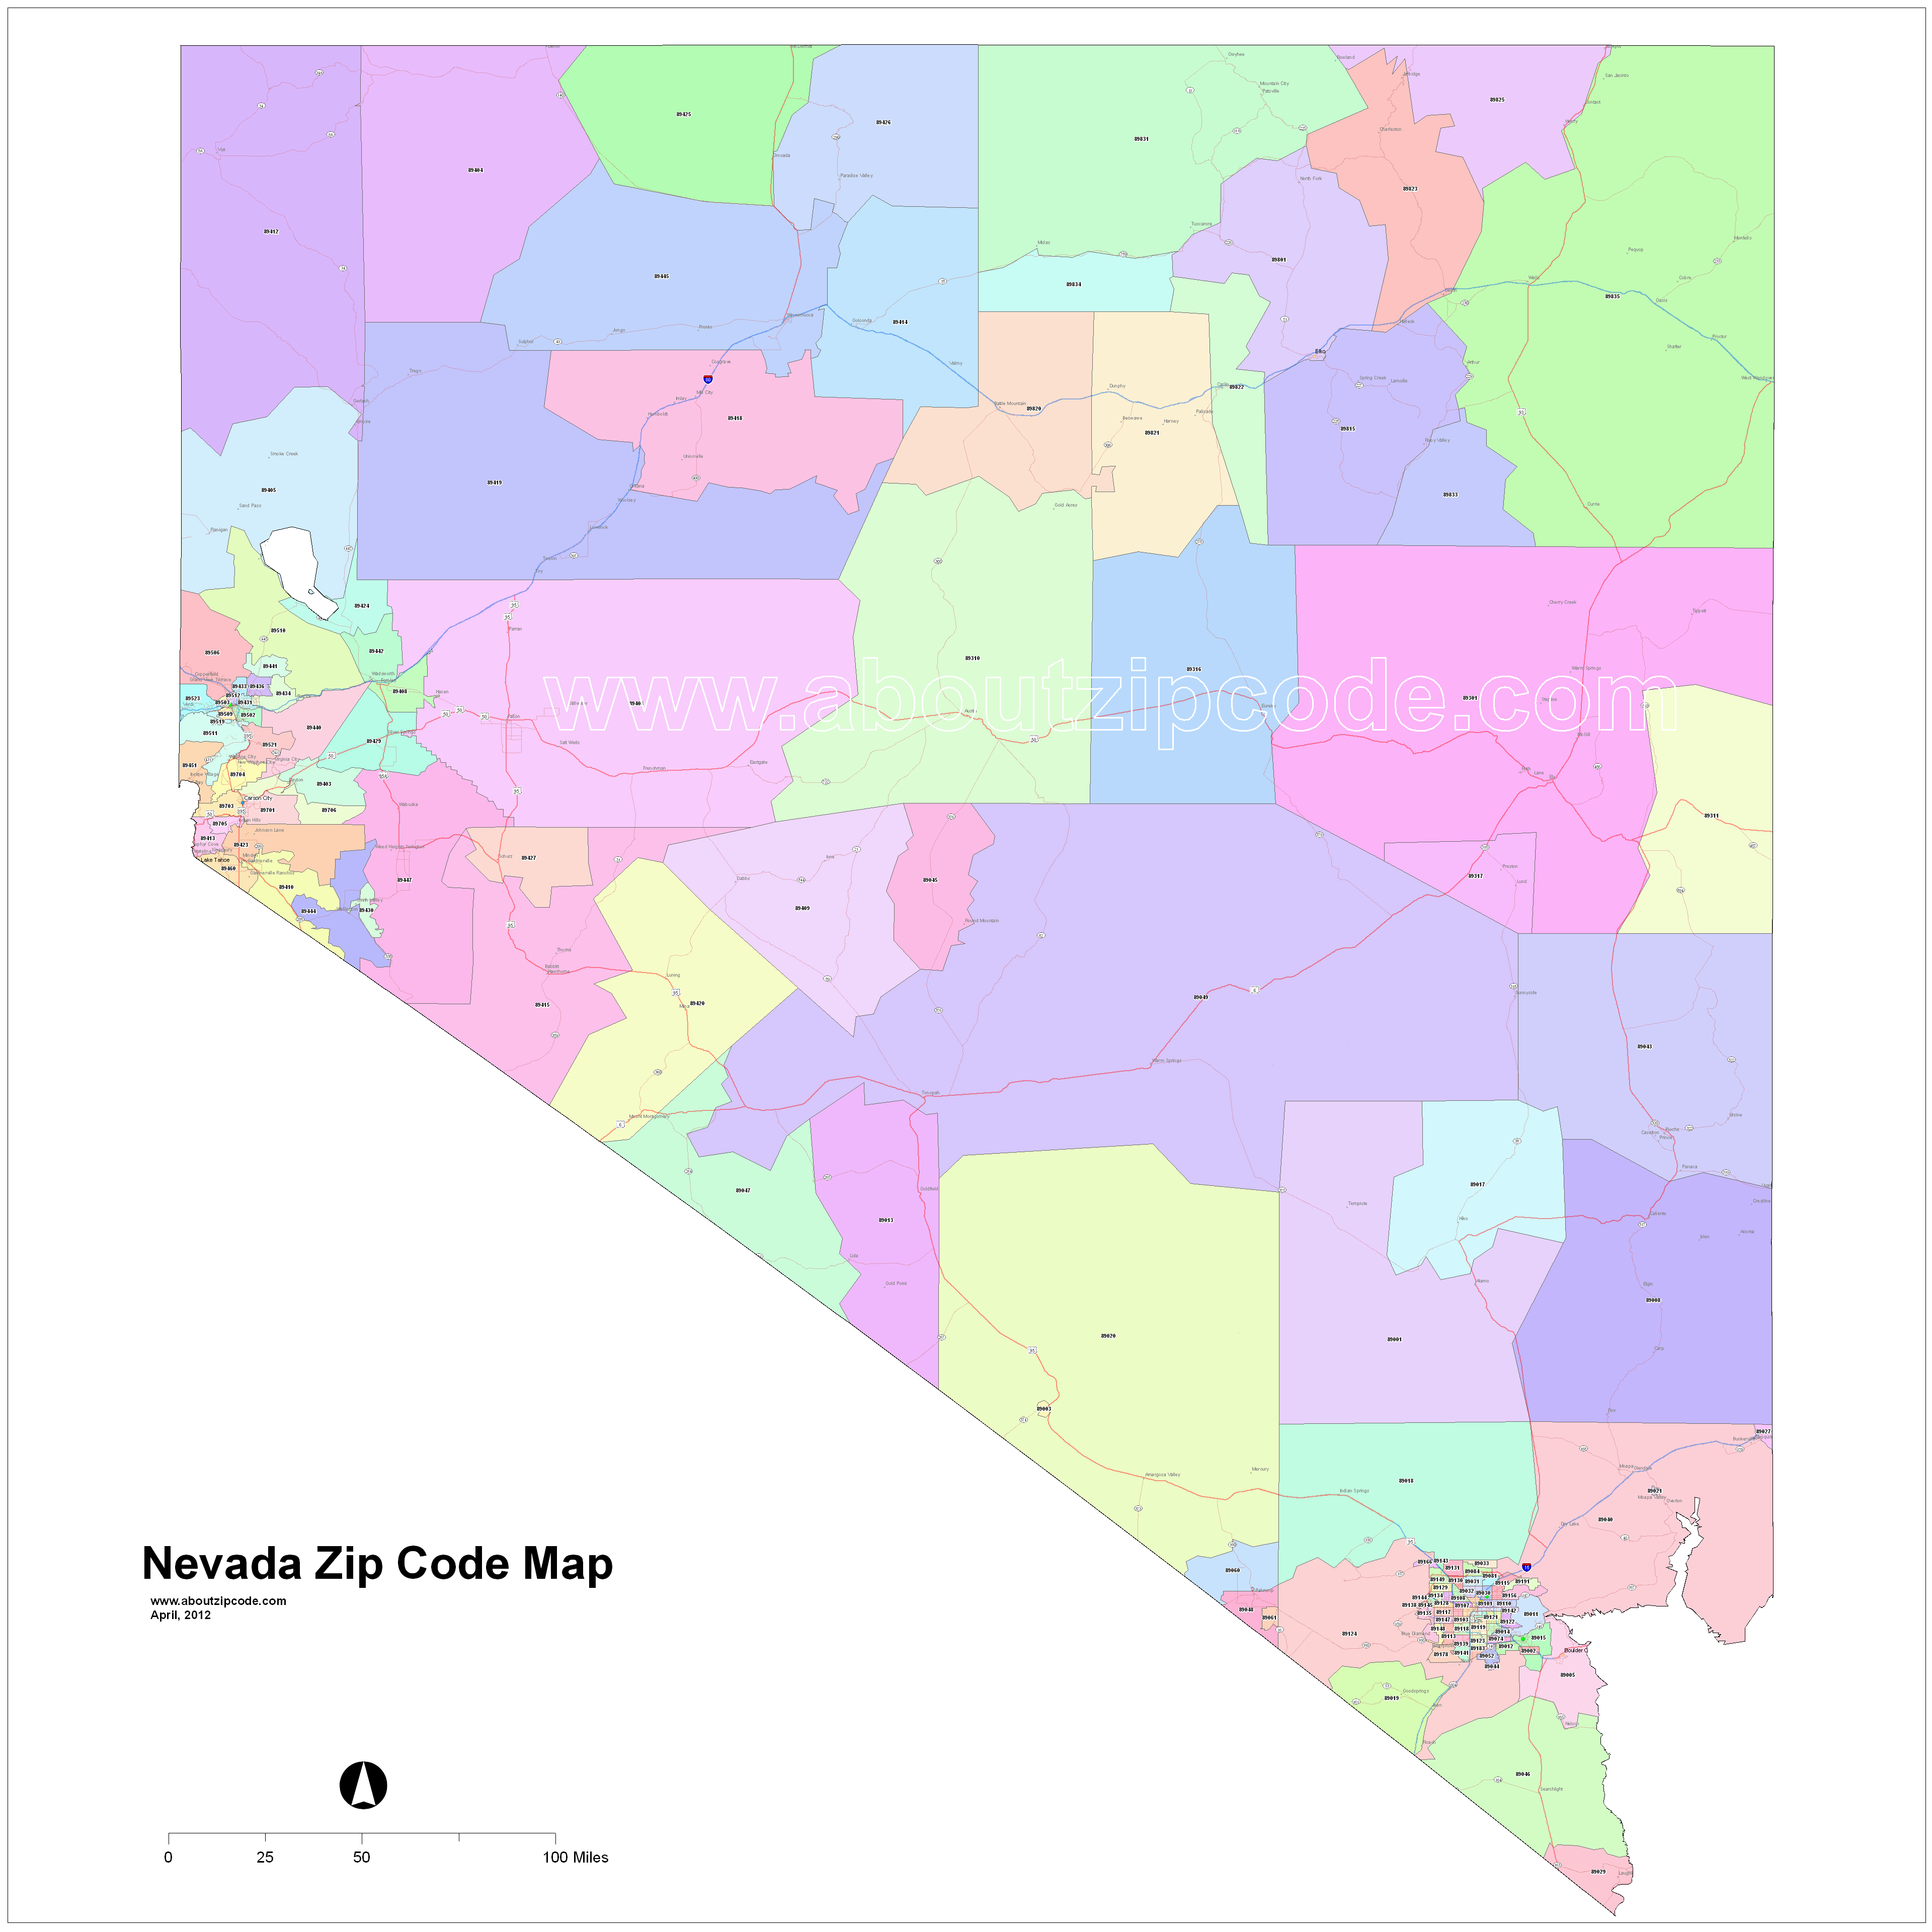 Nevada Zip Code Maps Free Nevada Zip Code Maps 7248